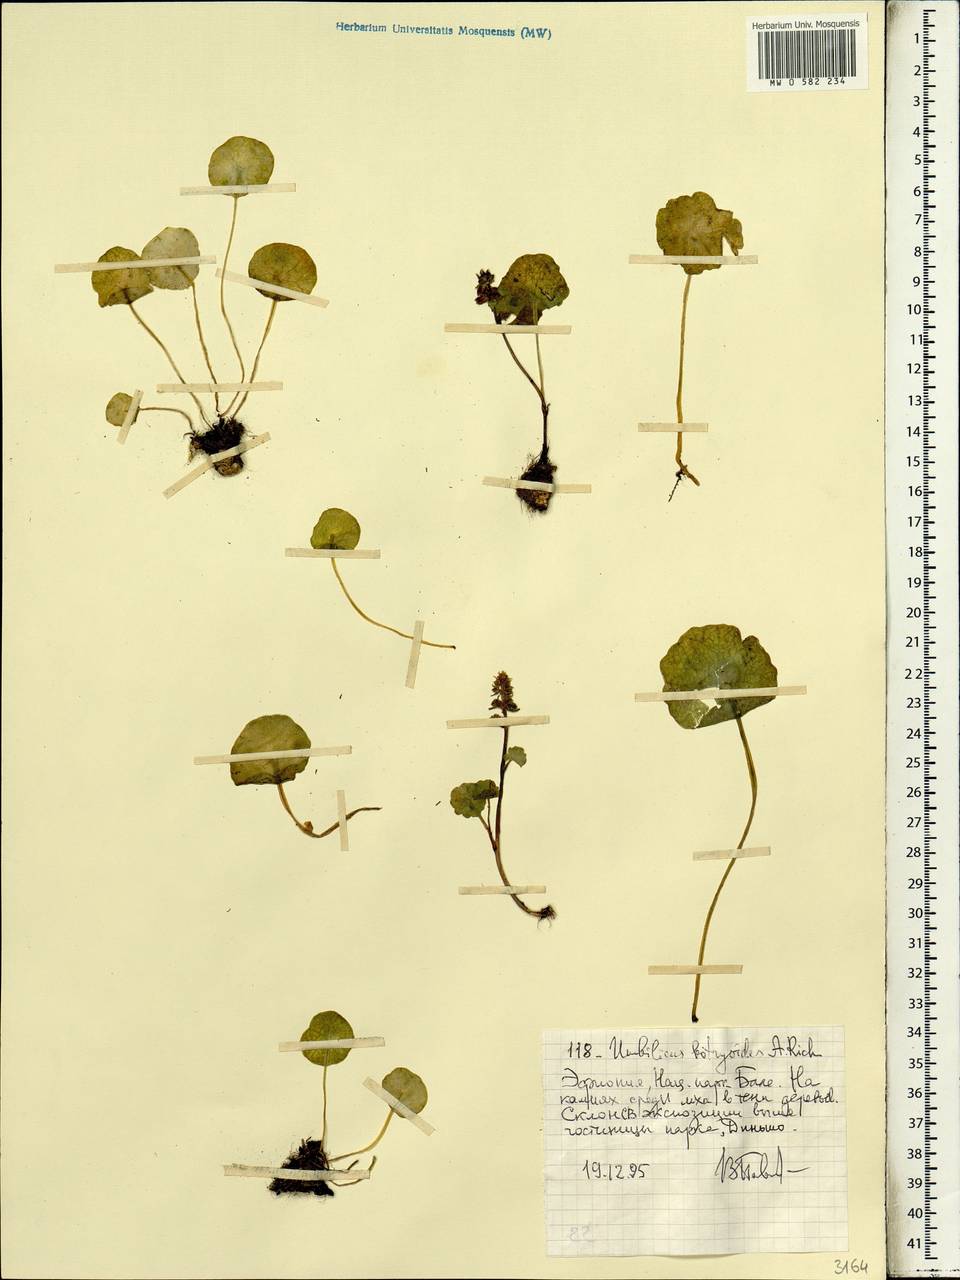 Umbilicus botryoides Hochst. ex A. Rich., Africa (AFR) (Ethiopia)